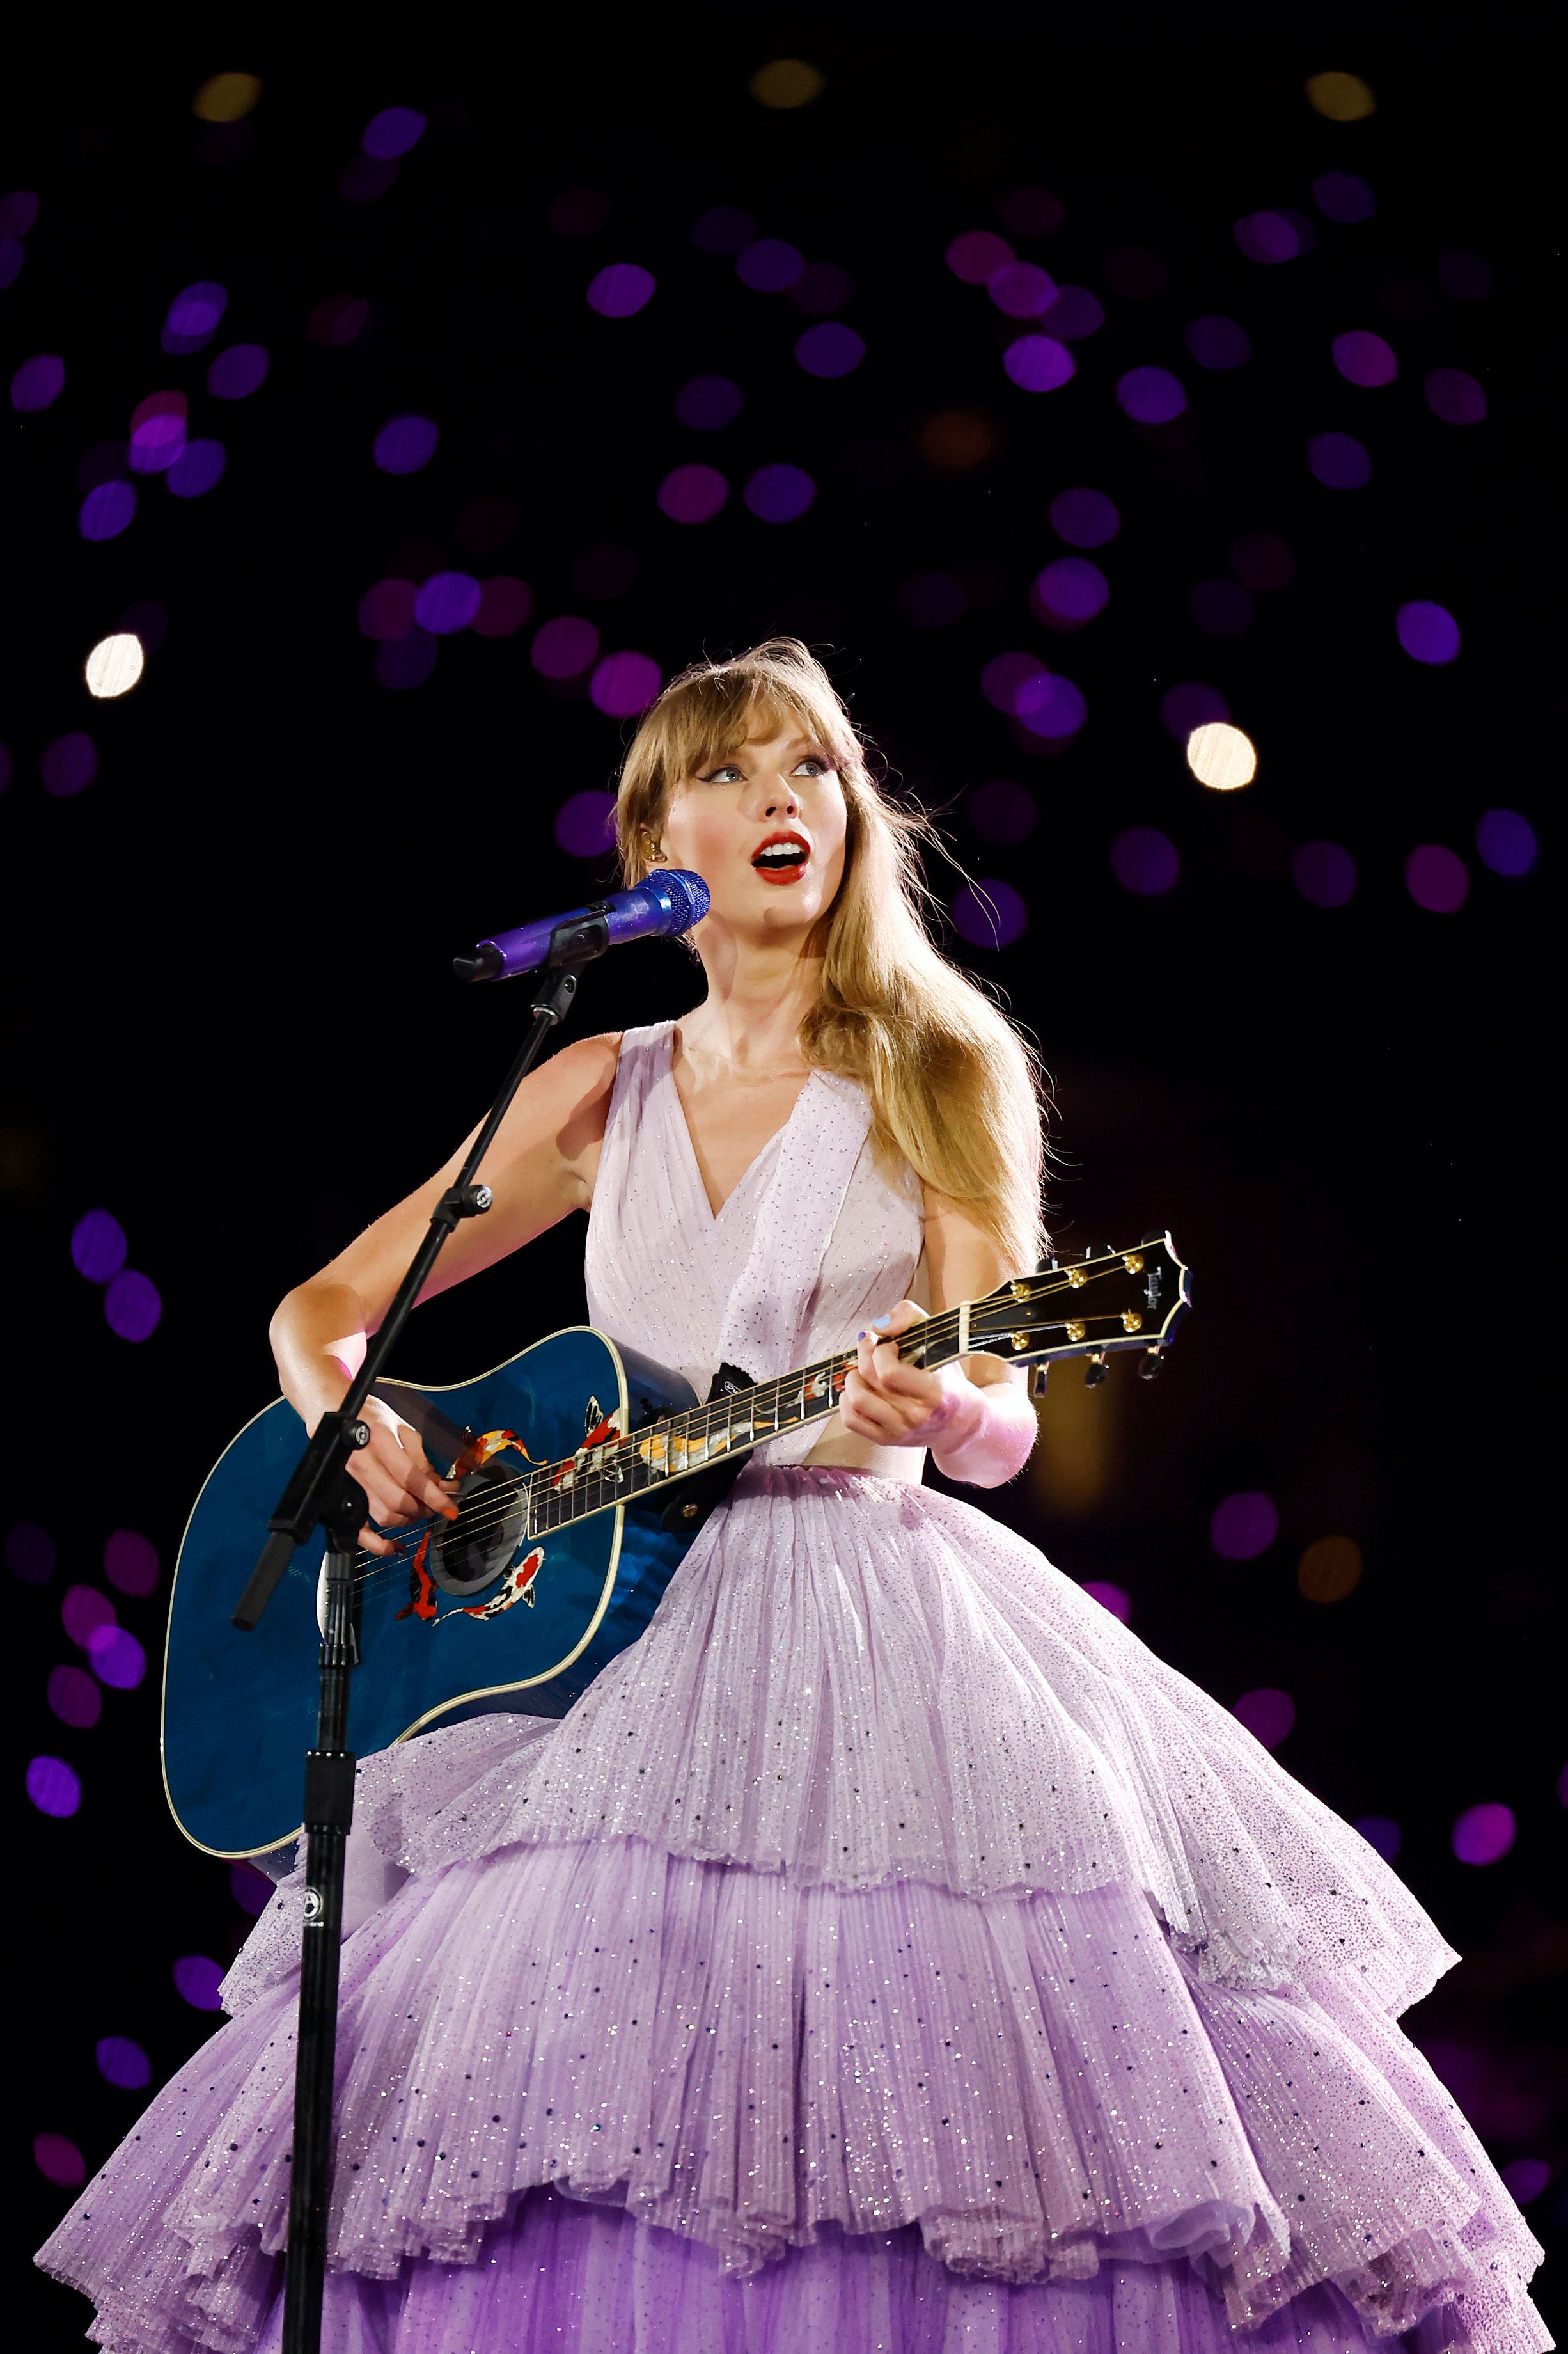 Taylor Swift Eras Tour Concert Film Sets L.A. Premiere